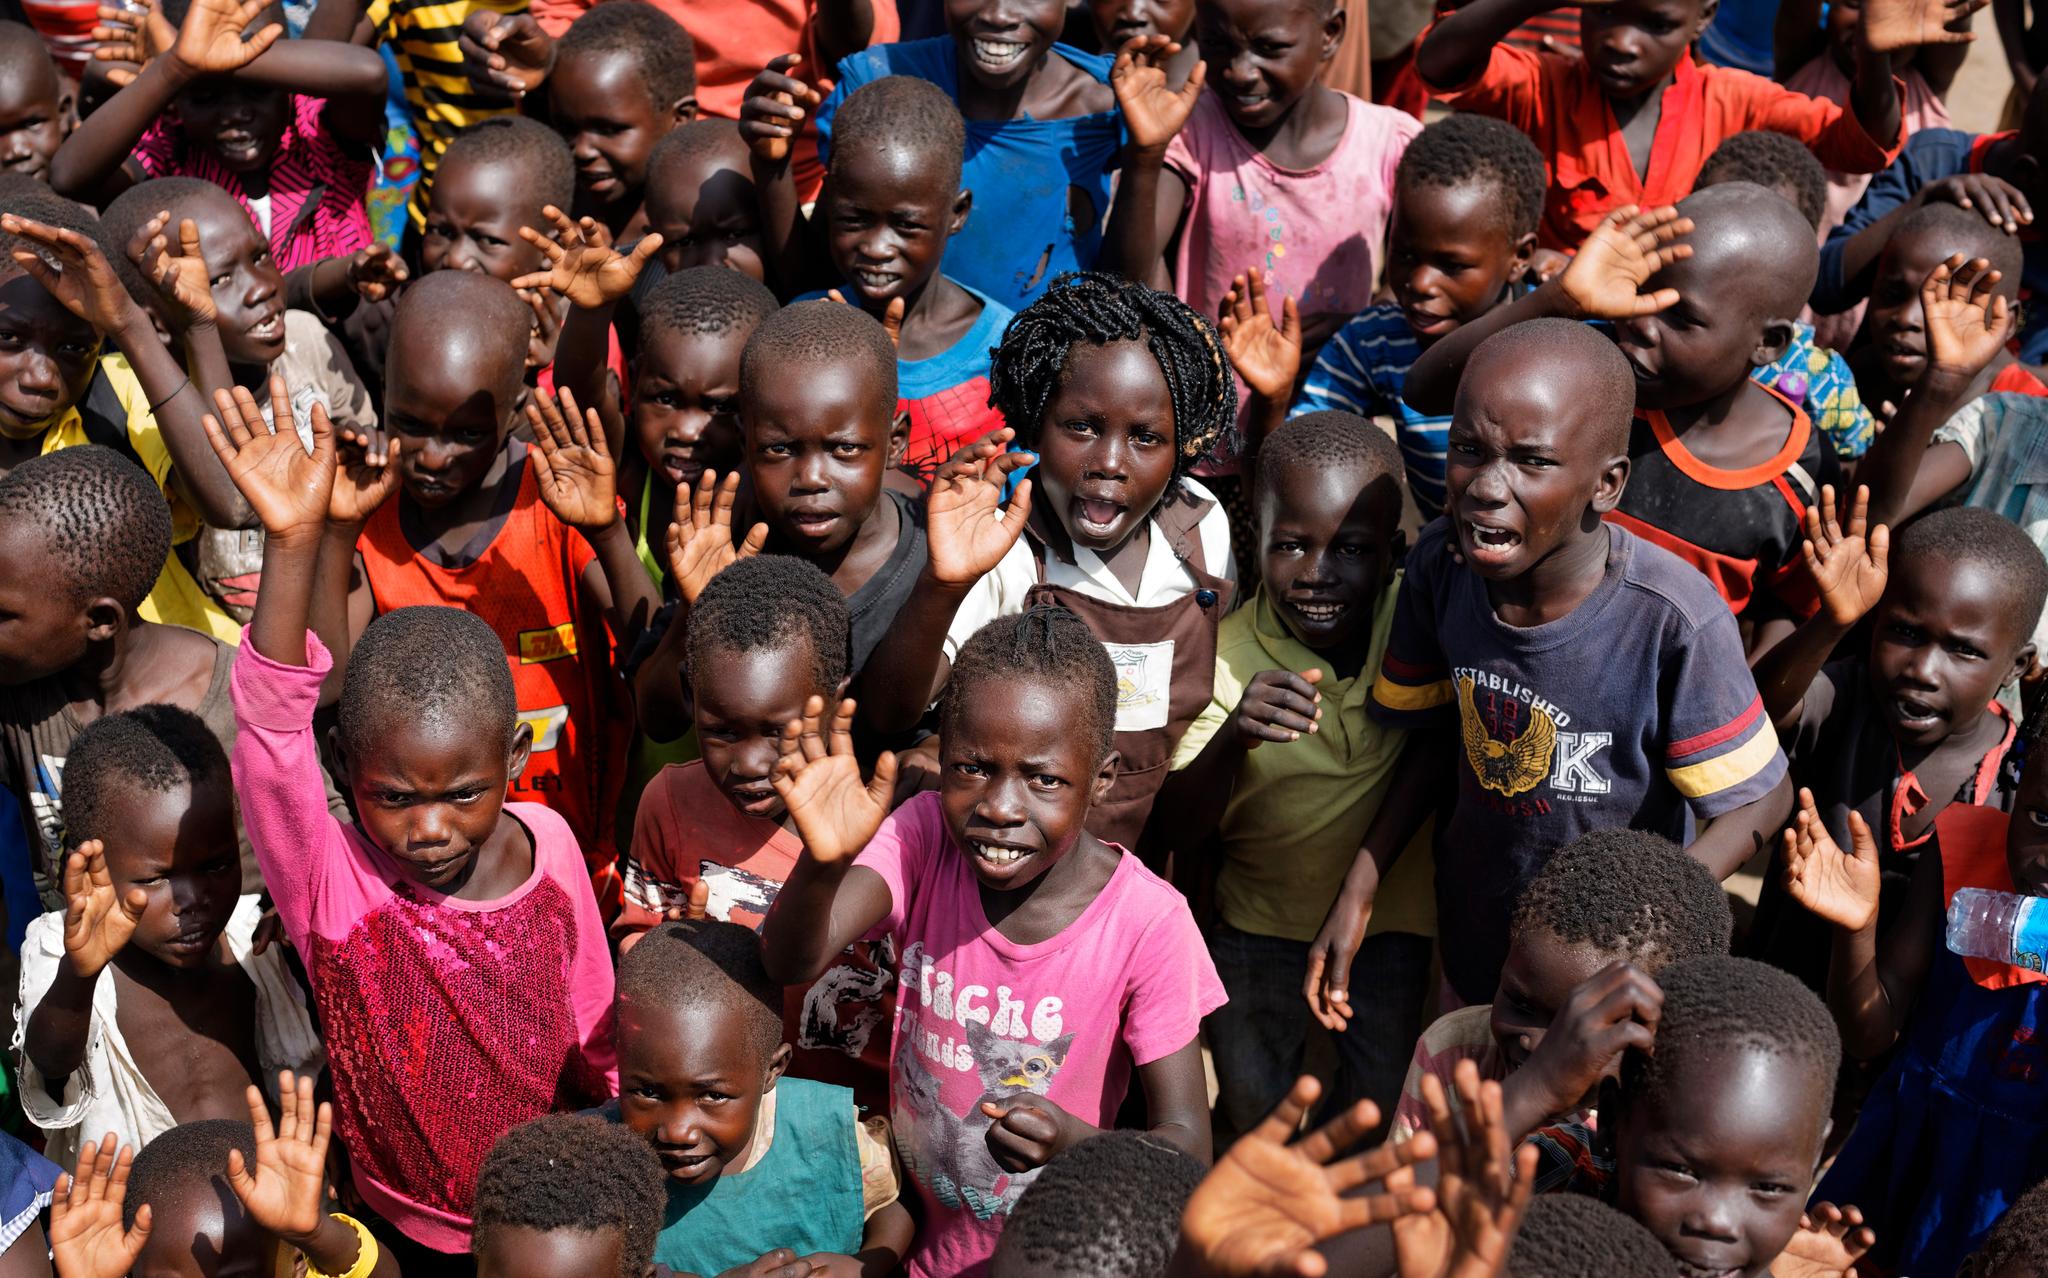   Sør-sudanske i flyktningbarn i leieren Bidi Bidi i Uganda ser opp og smiler til fotografen som flyr over det som er en av verdens største flyktningleirer. Leirens skole har 500 elever og får støtte fra UNICEF og Save the Children.